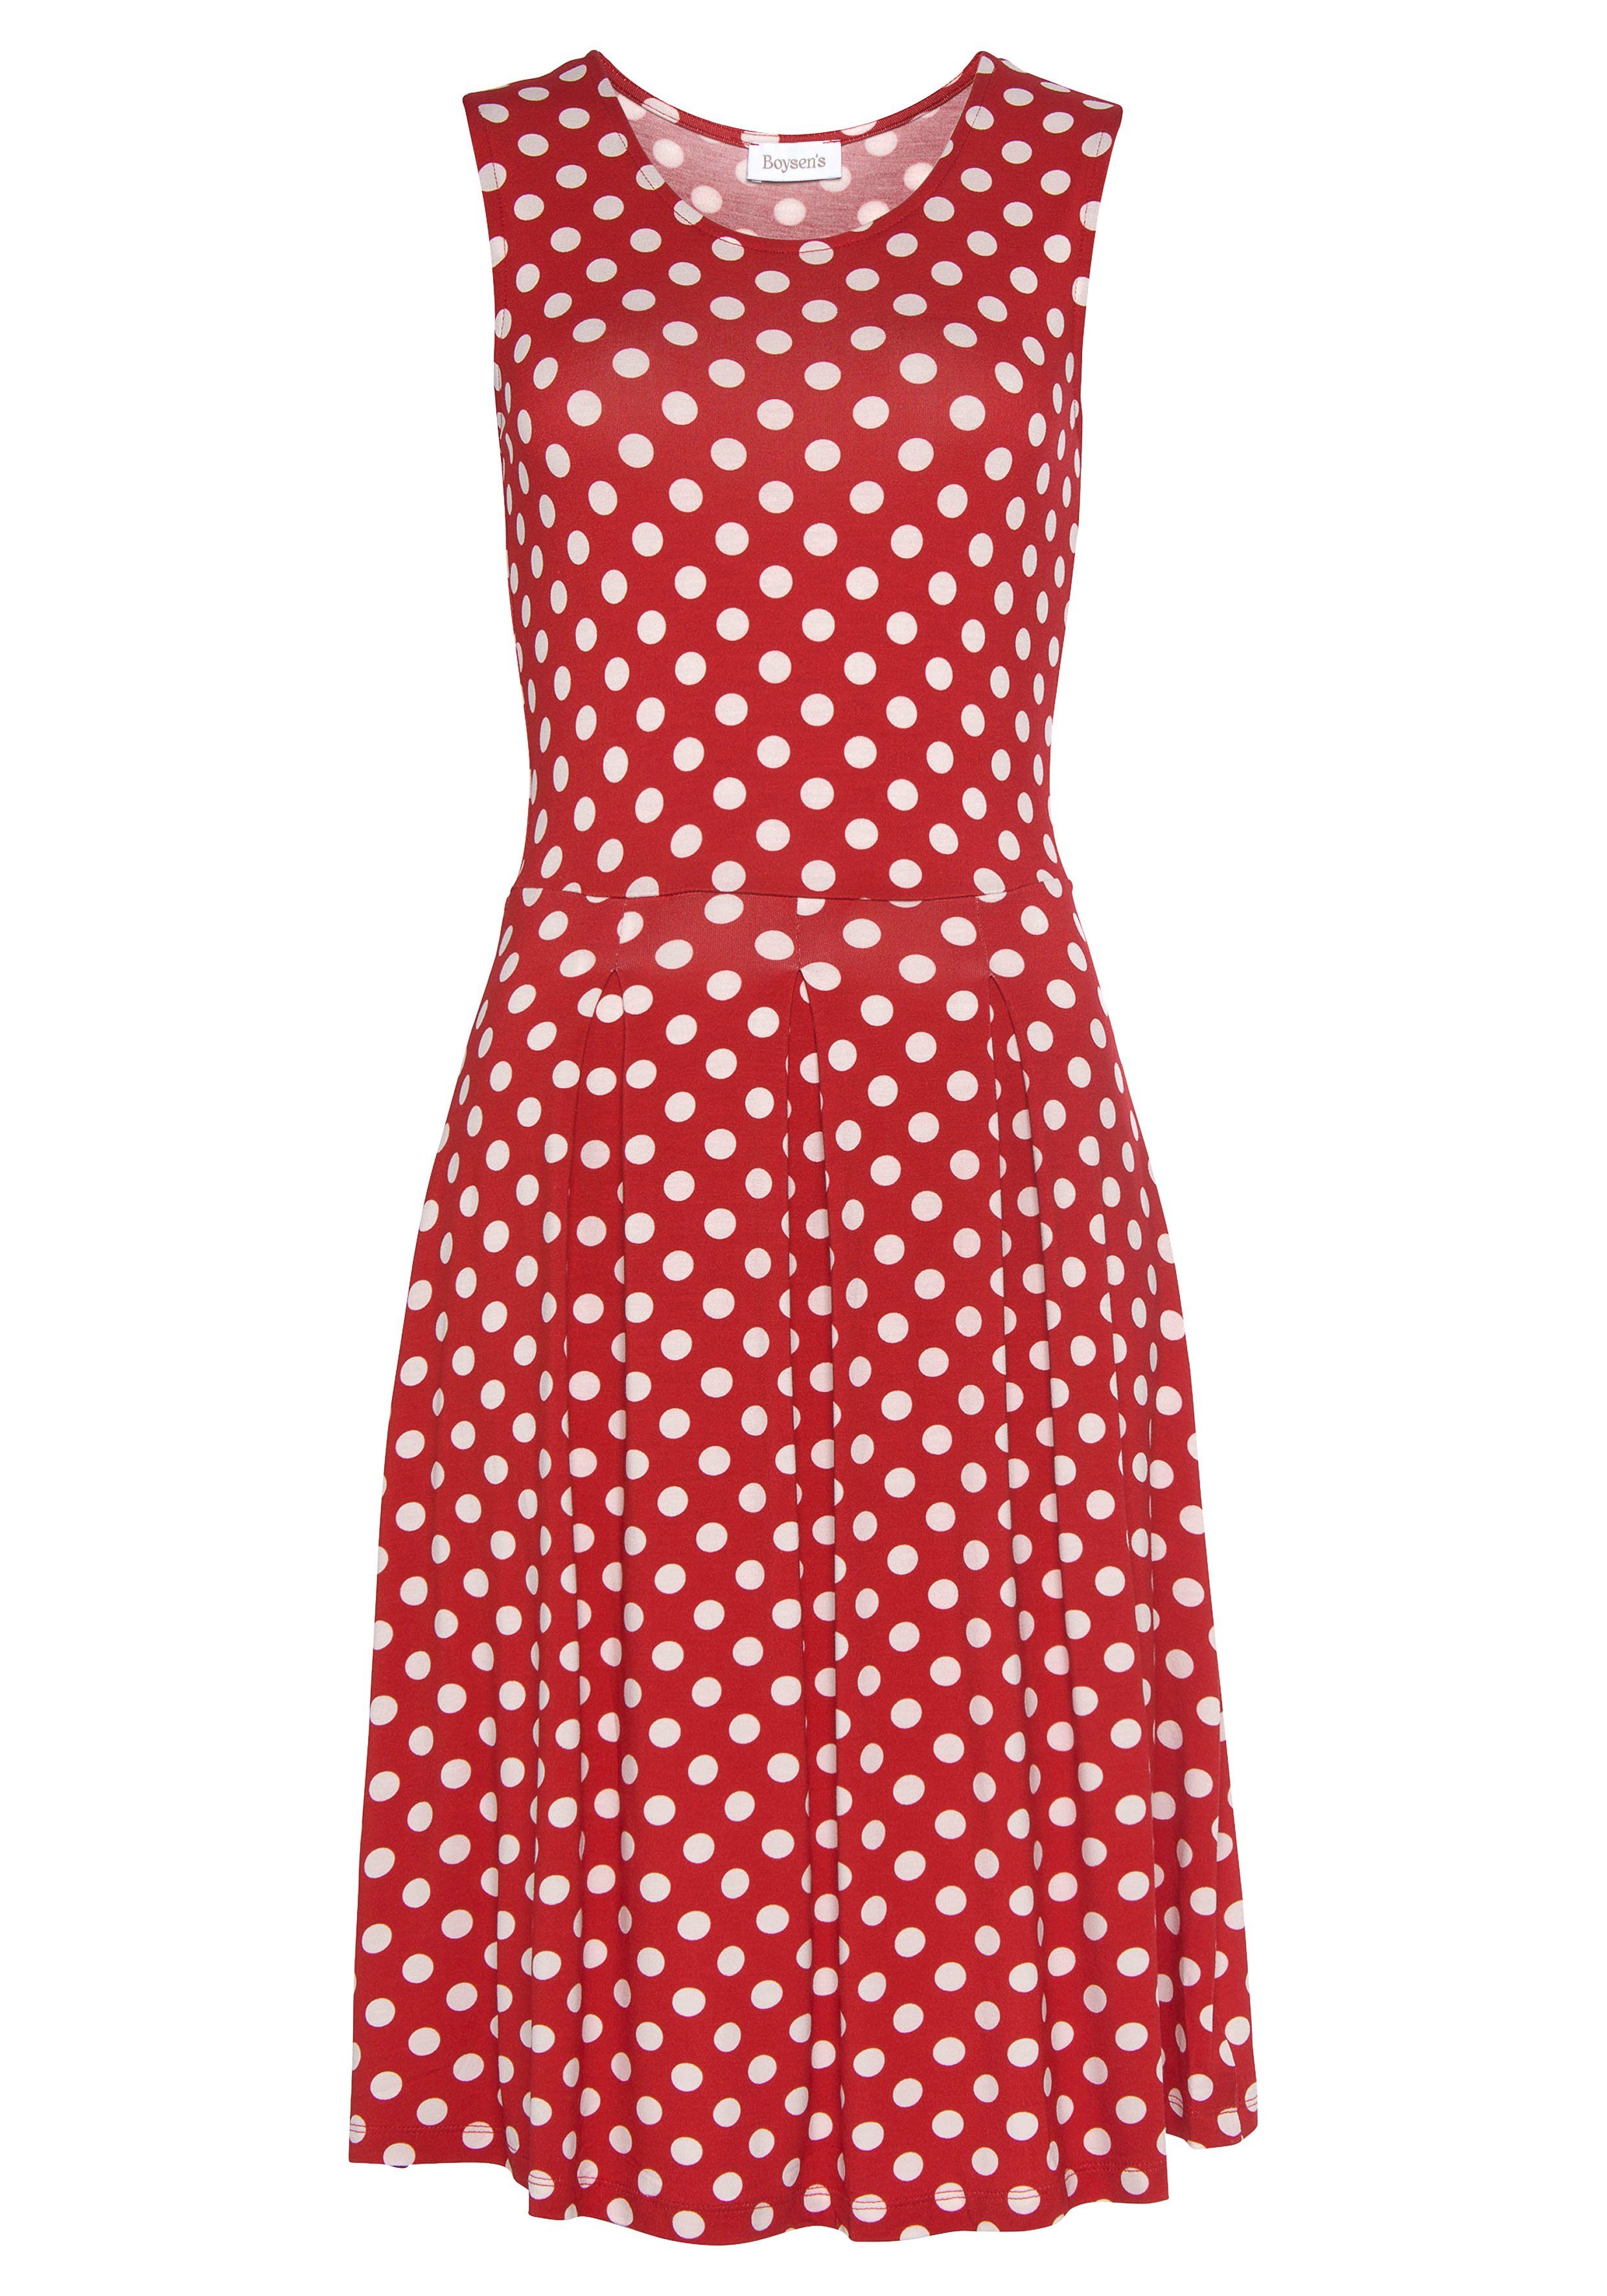 Boysen's Jerseykleid süßem rot, mit weiß Tupfen-Print